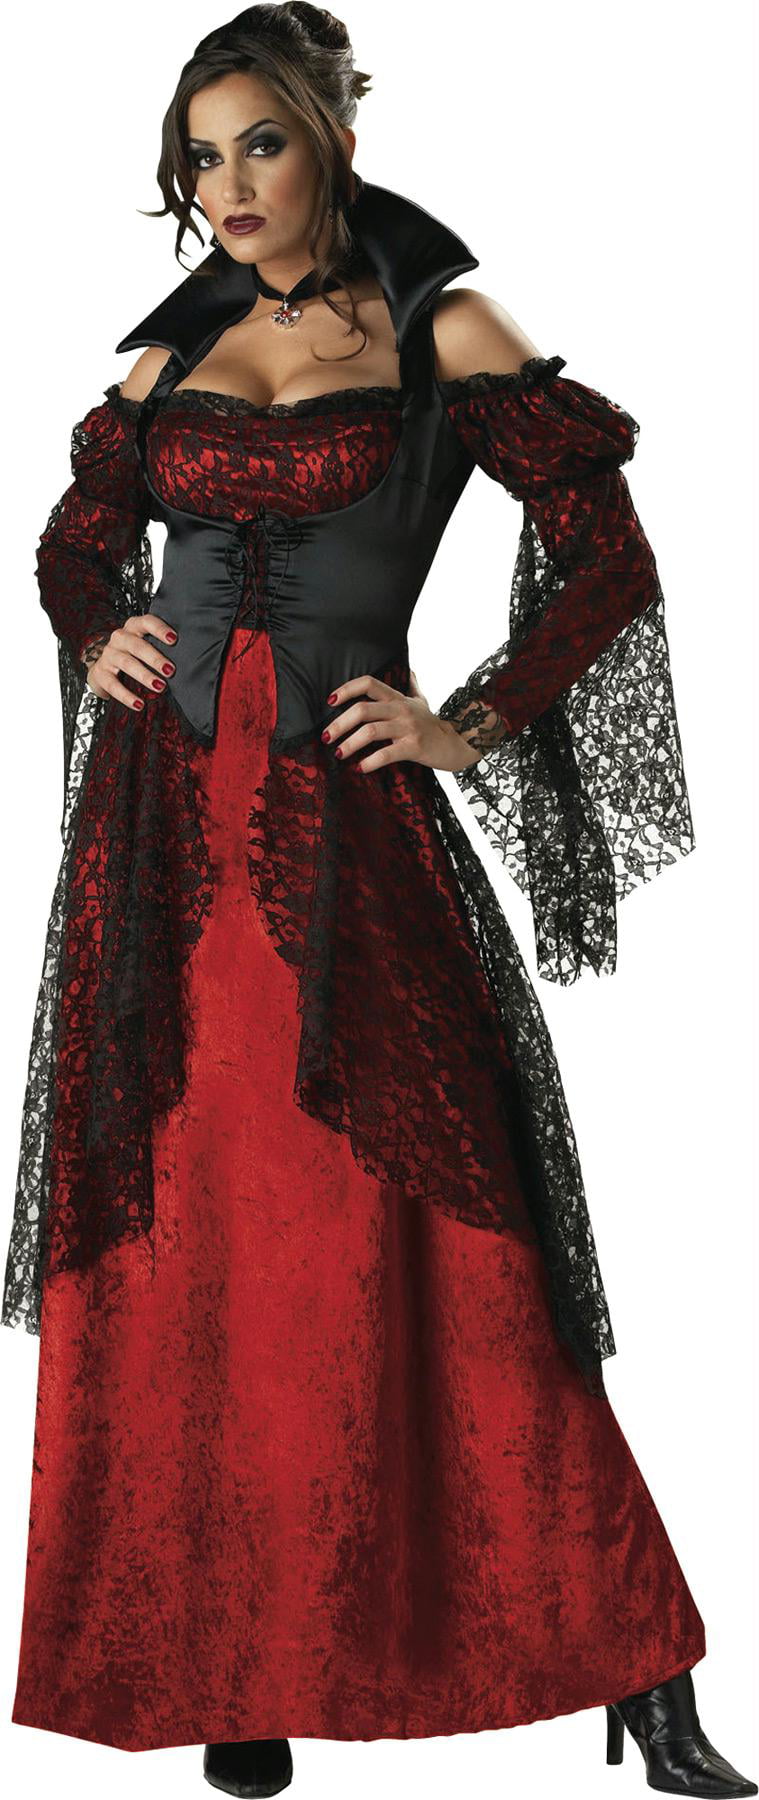 Vampiress Adult Halloween Costume - Walmart.com